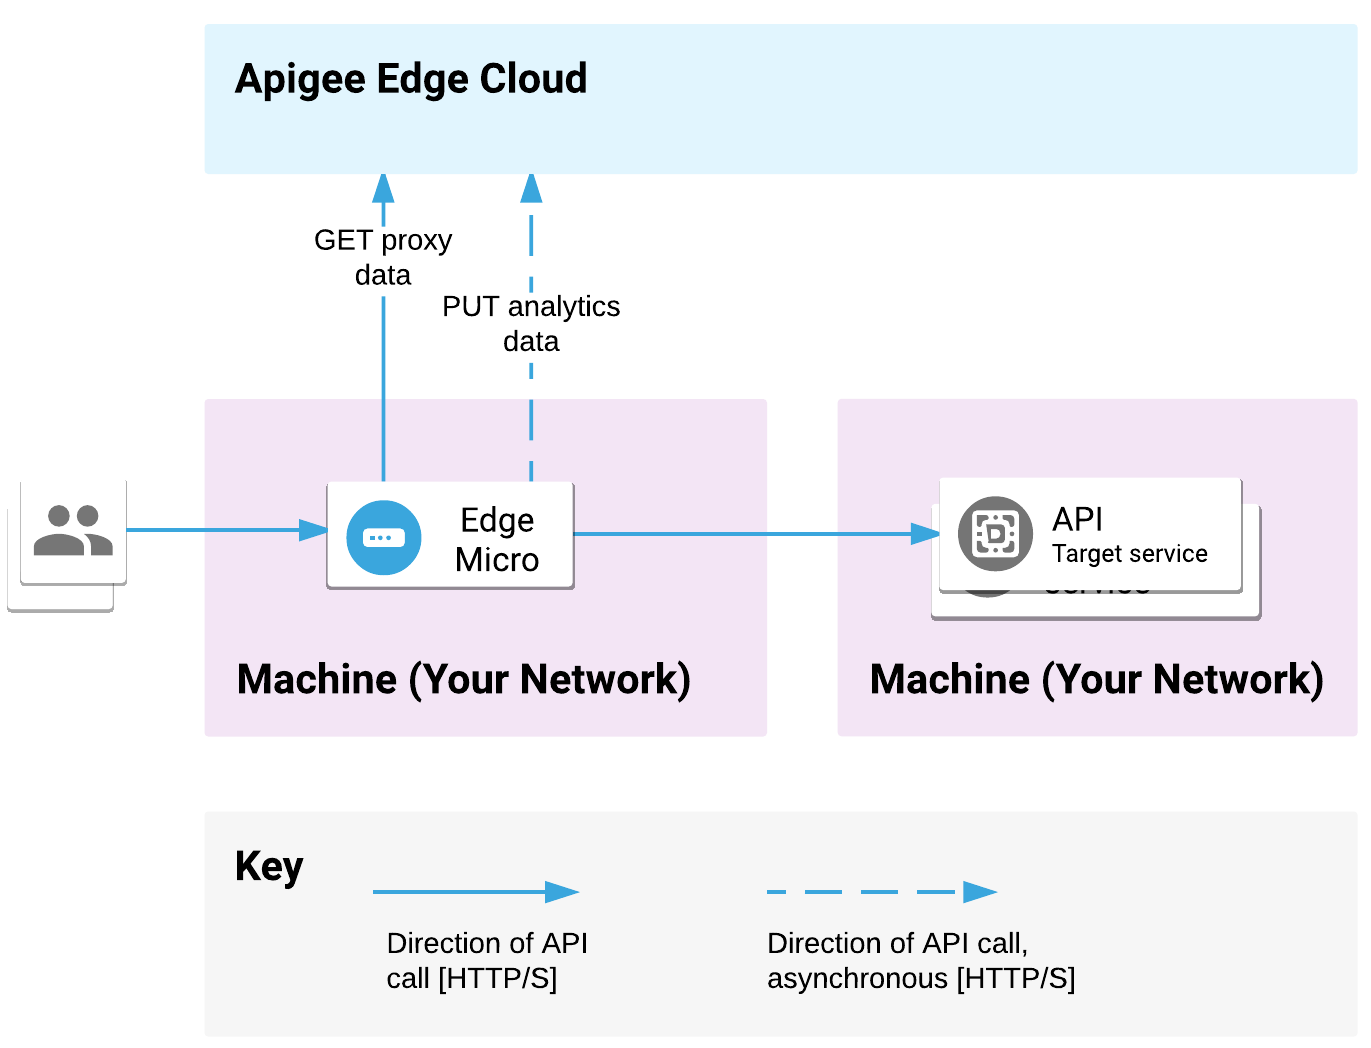 تم إيقاف تقنية Edge Microgateway على أحد الأجهزة، وتم نشر خدمات الخلفية في موقع آخر. تعالج البوابة الصغيرة طلبات واجهة برمجة التطبيقات ويتم إرسال الطلبات إلى الواجهة الخلفية. تنقل Microgateway بيانات الوكيل والتحليلات باستخدام Apigee Edge Cloud.